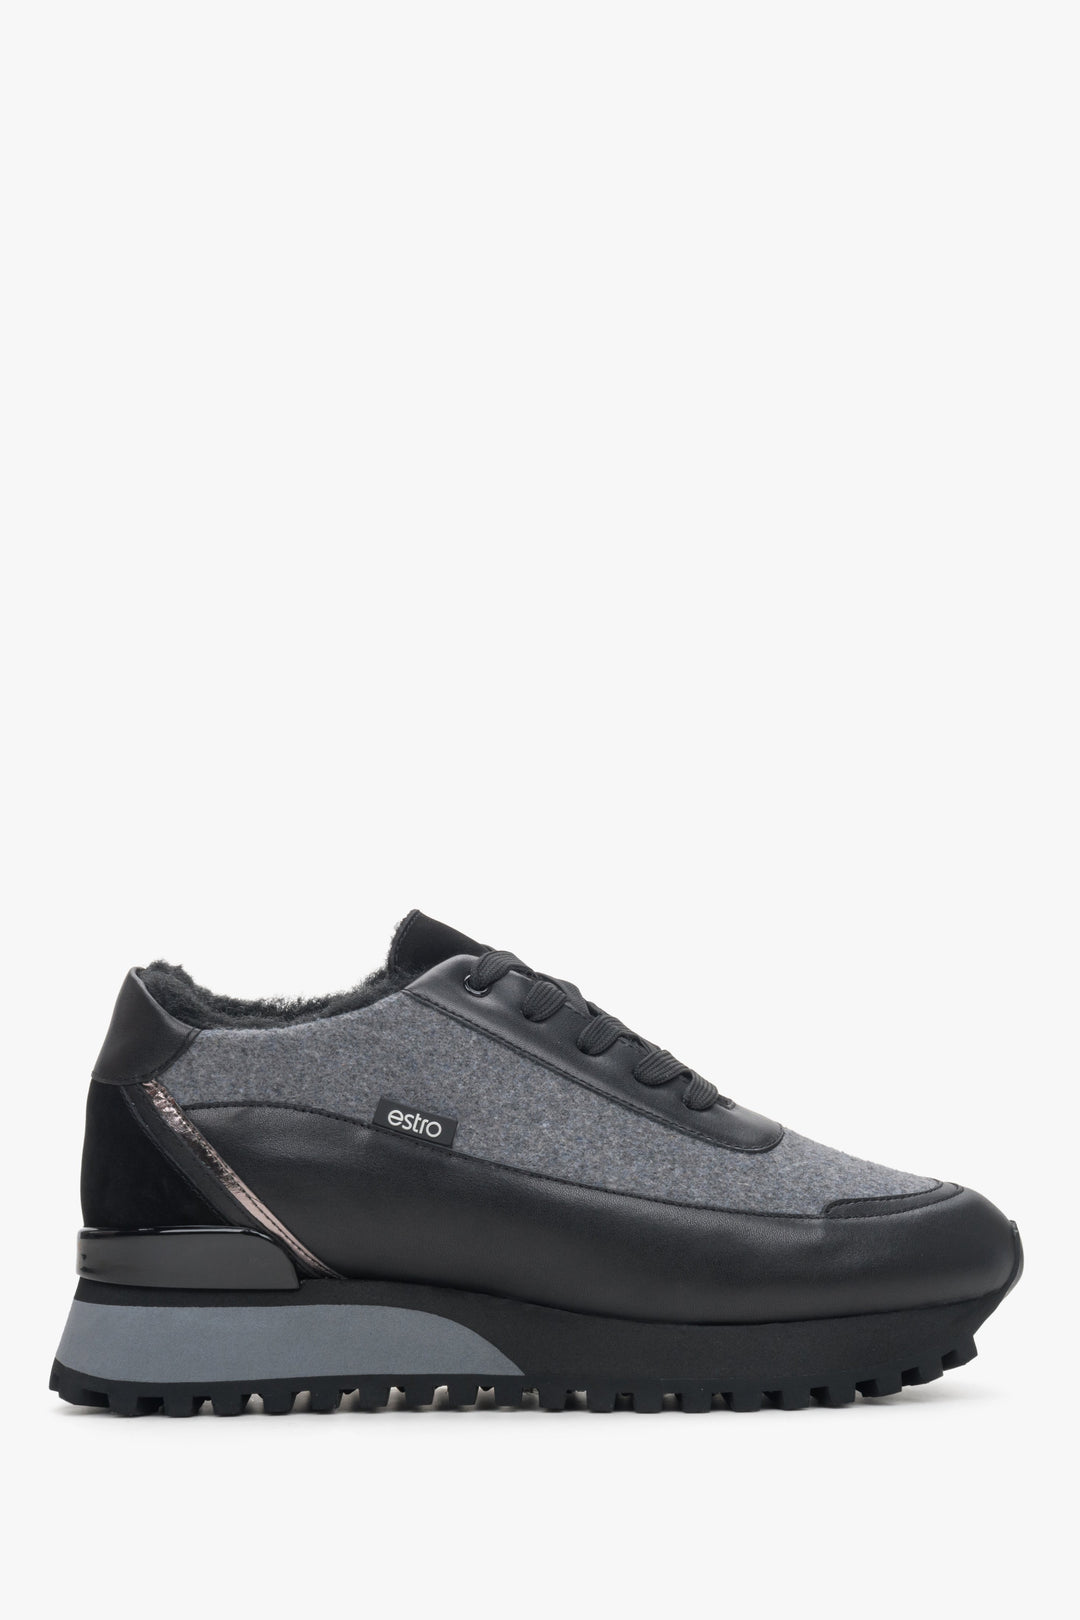 Czarno-szare skórzane sneakersy damskie na zimę z futrzanym wypełnieniem Estro ER00114141